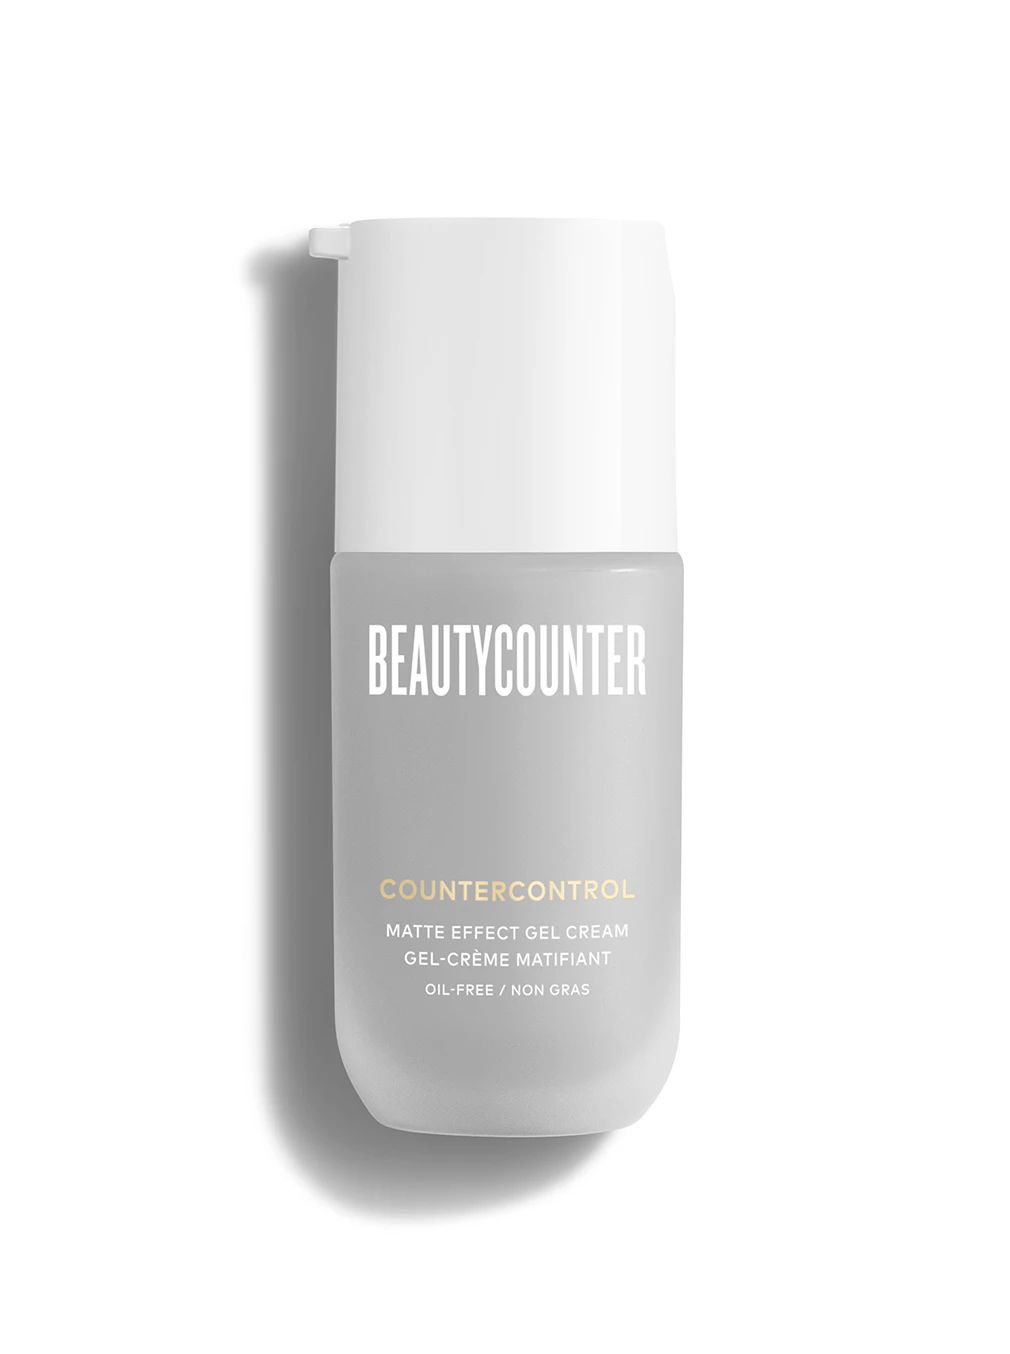 Countercontrol Matte Effect Gel Cream | Beautycounter.com